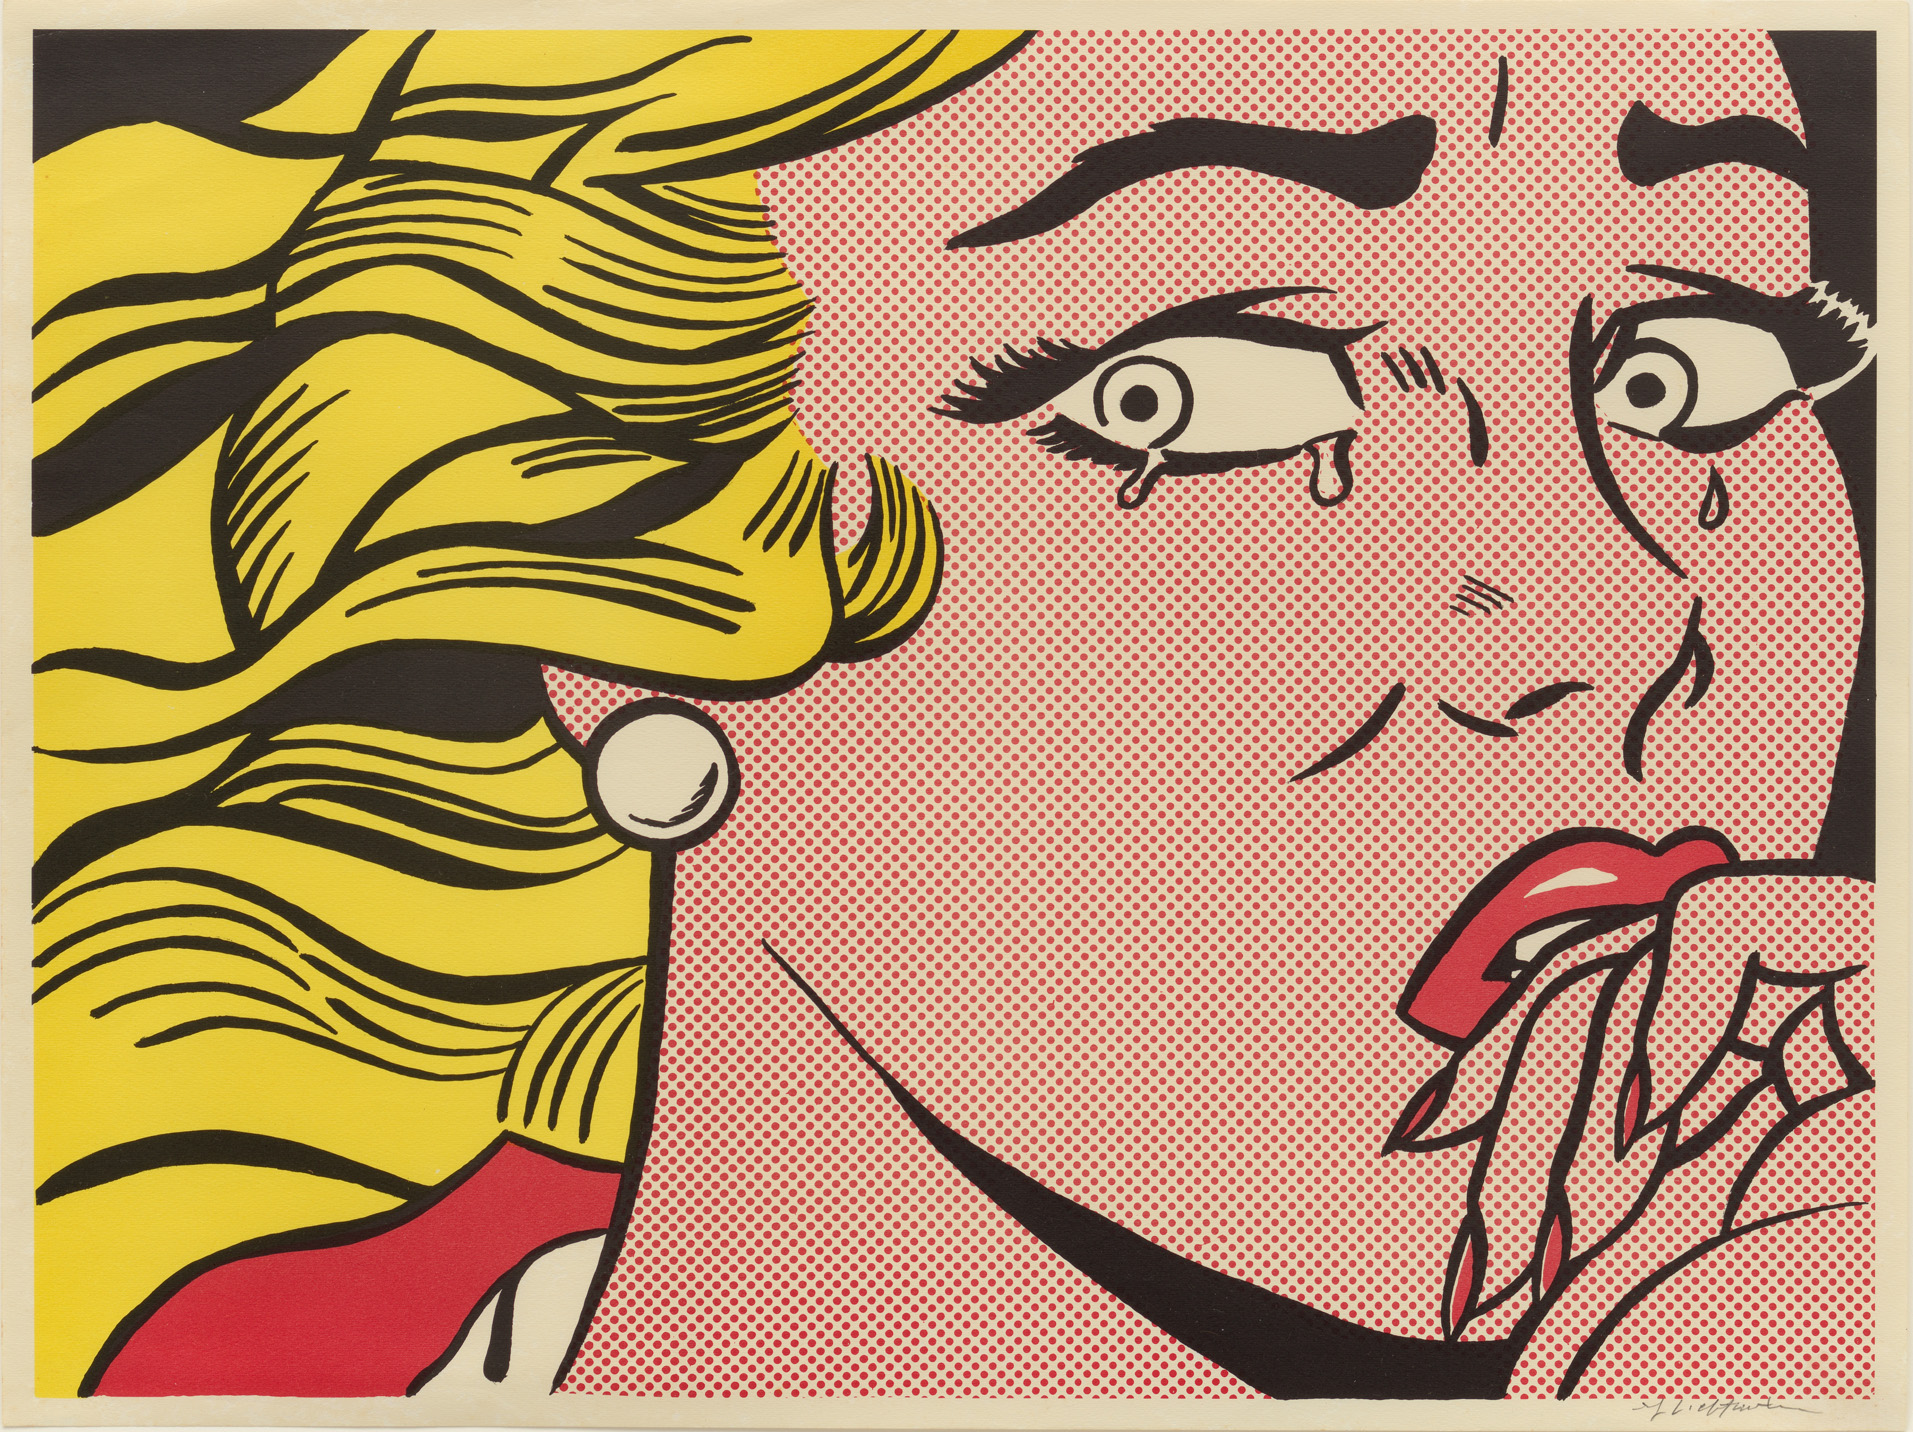 On View: Roy Lichtenstein - Crying Girl